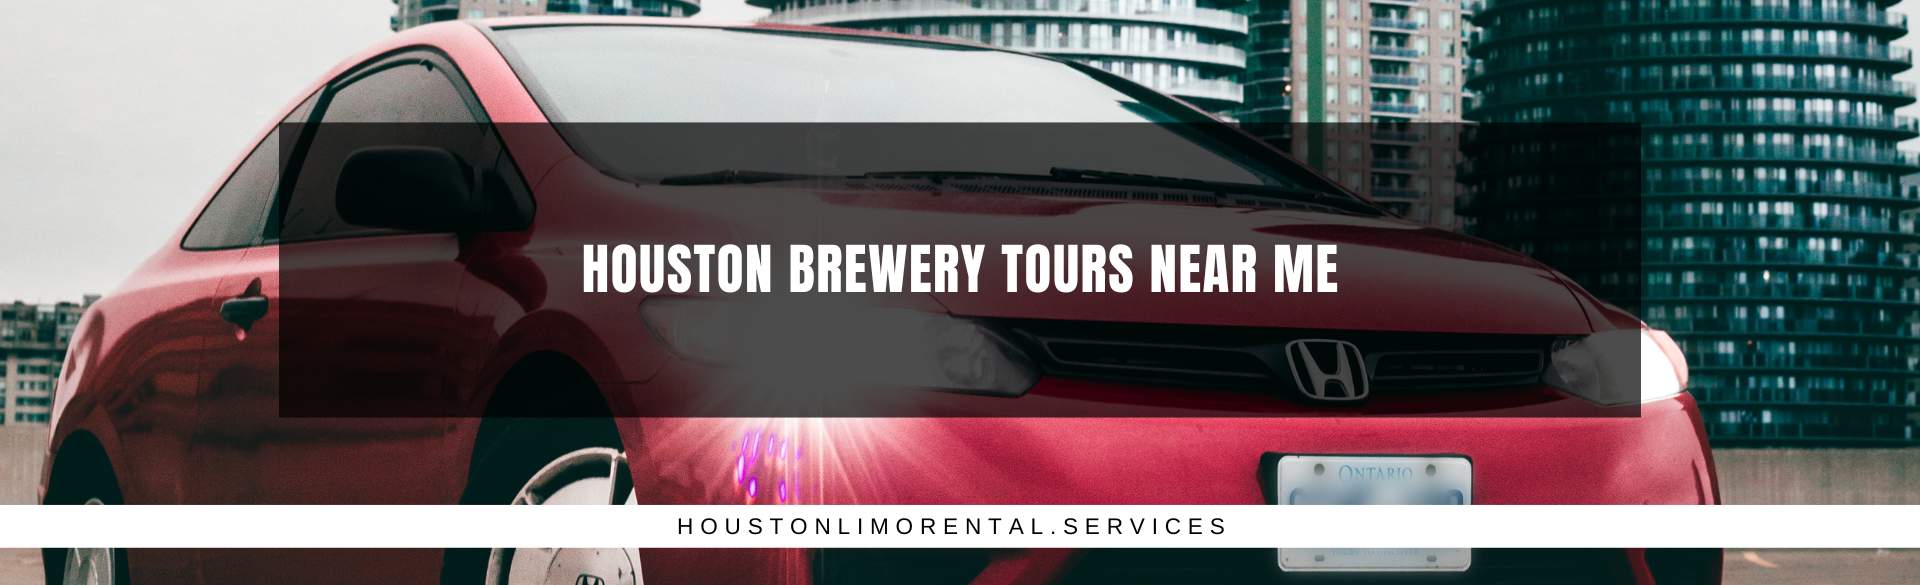 Houston Brewery Tours Near Me